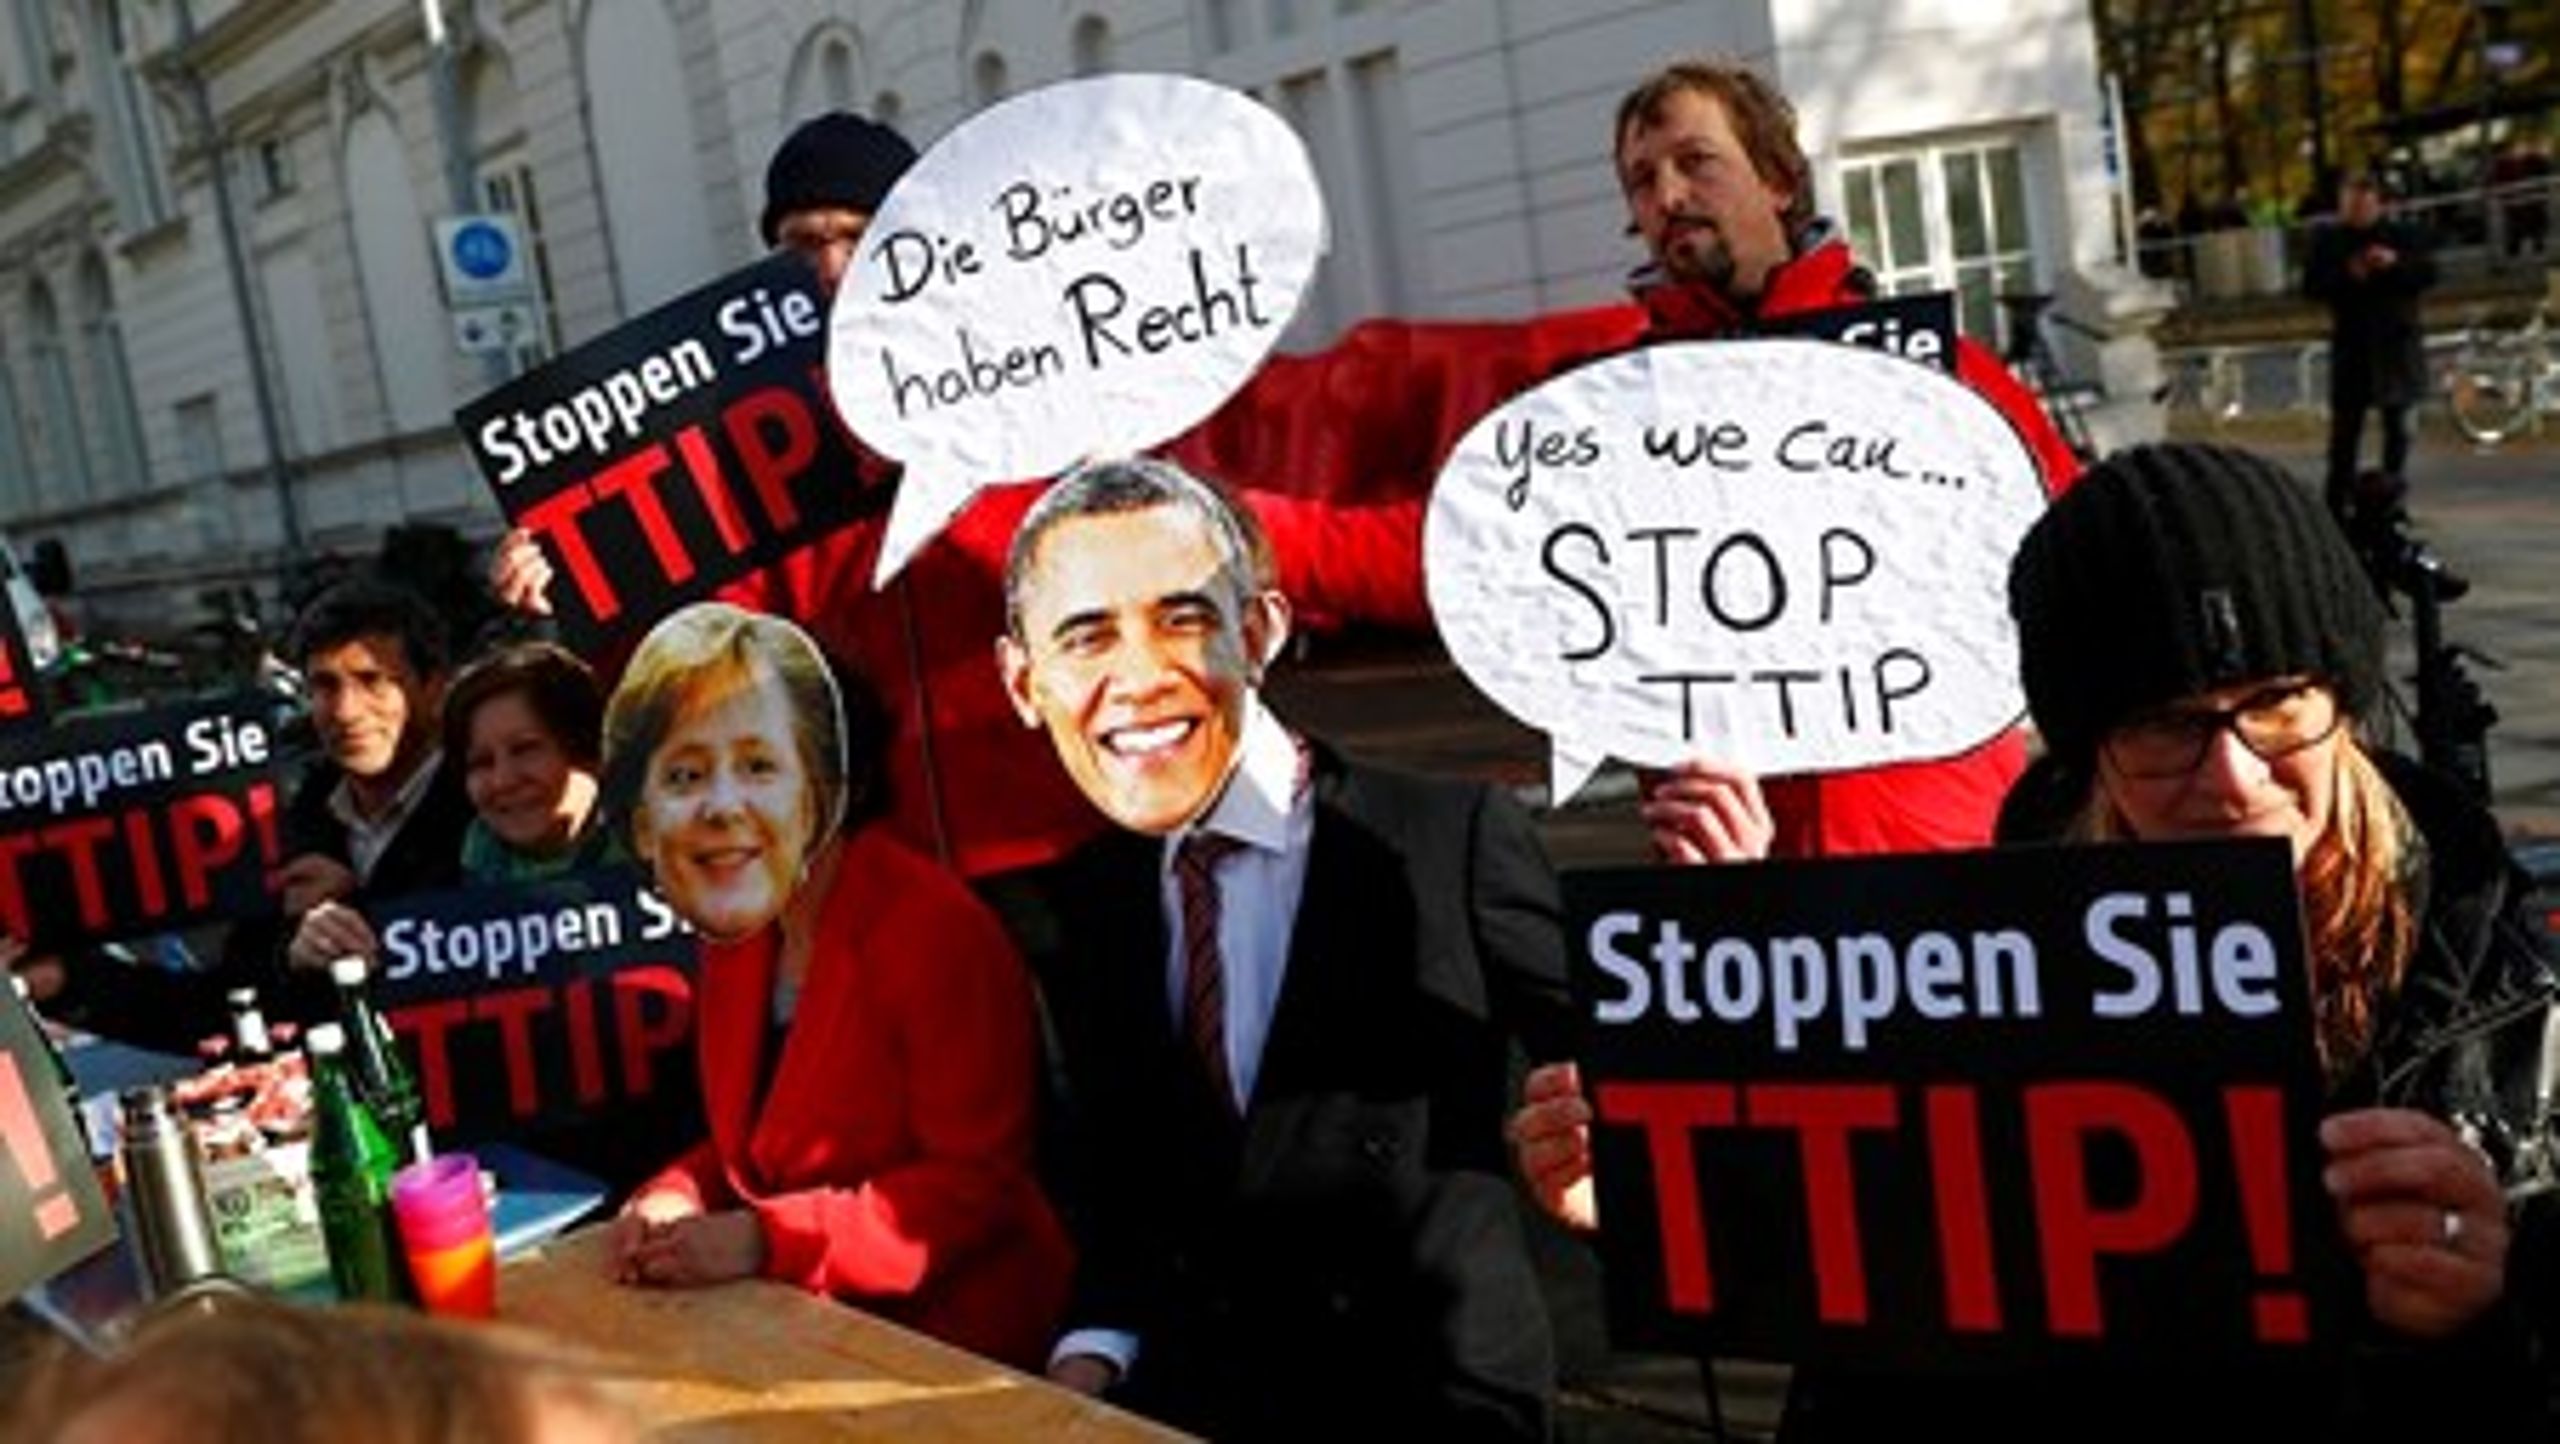 "Borgerne har ret", siger kansler Angela Merkel i dukkeversion ved den protest mod frihandelsaftalen med USA, som lokkede tusinder på gaden i Hannover i weekenden.